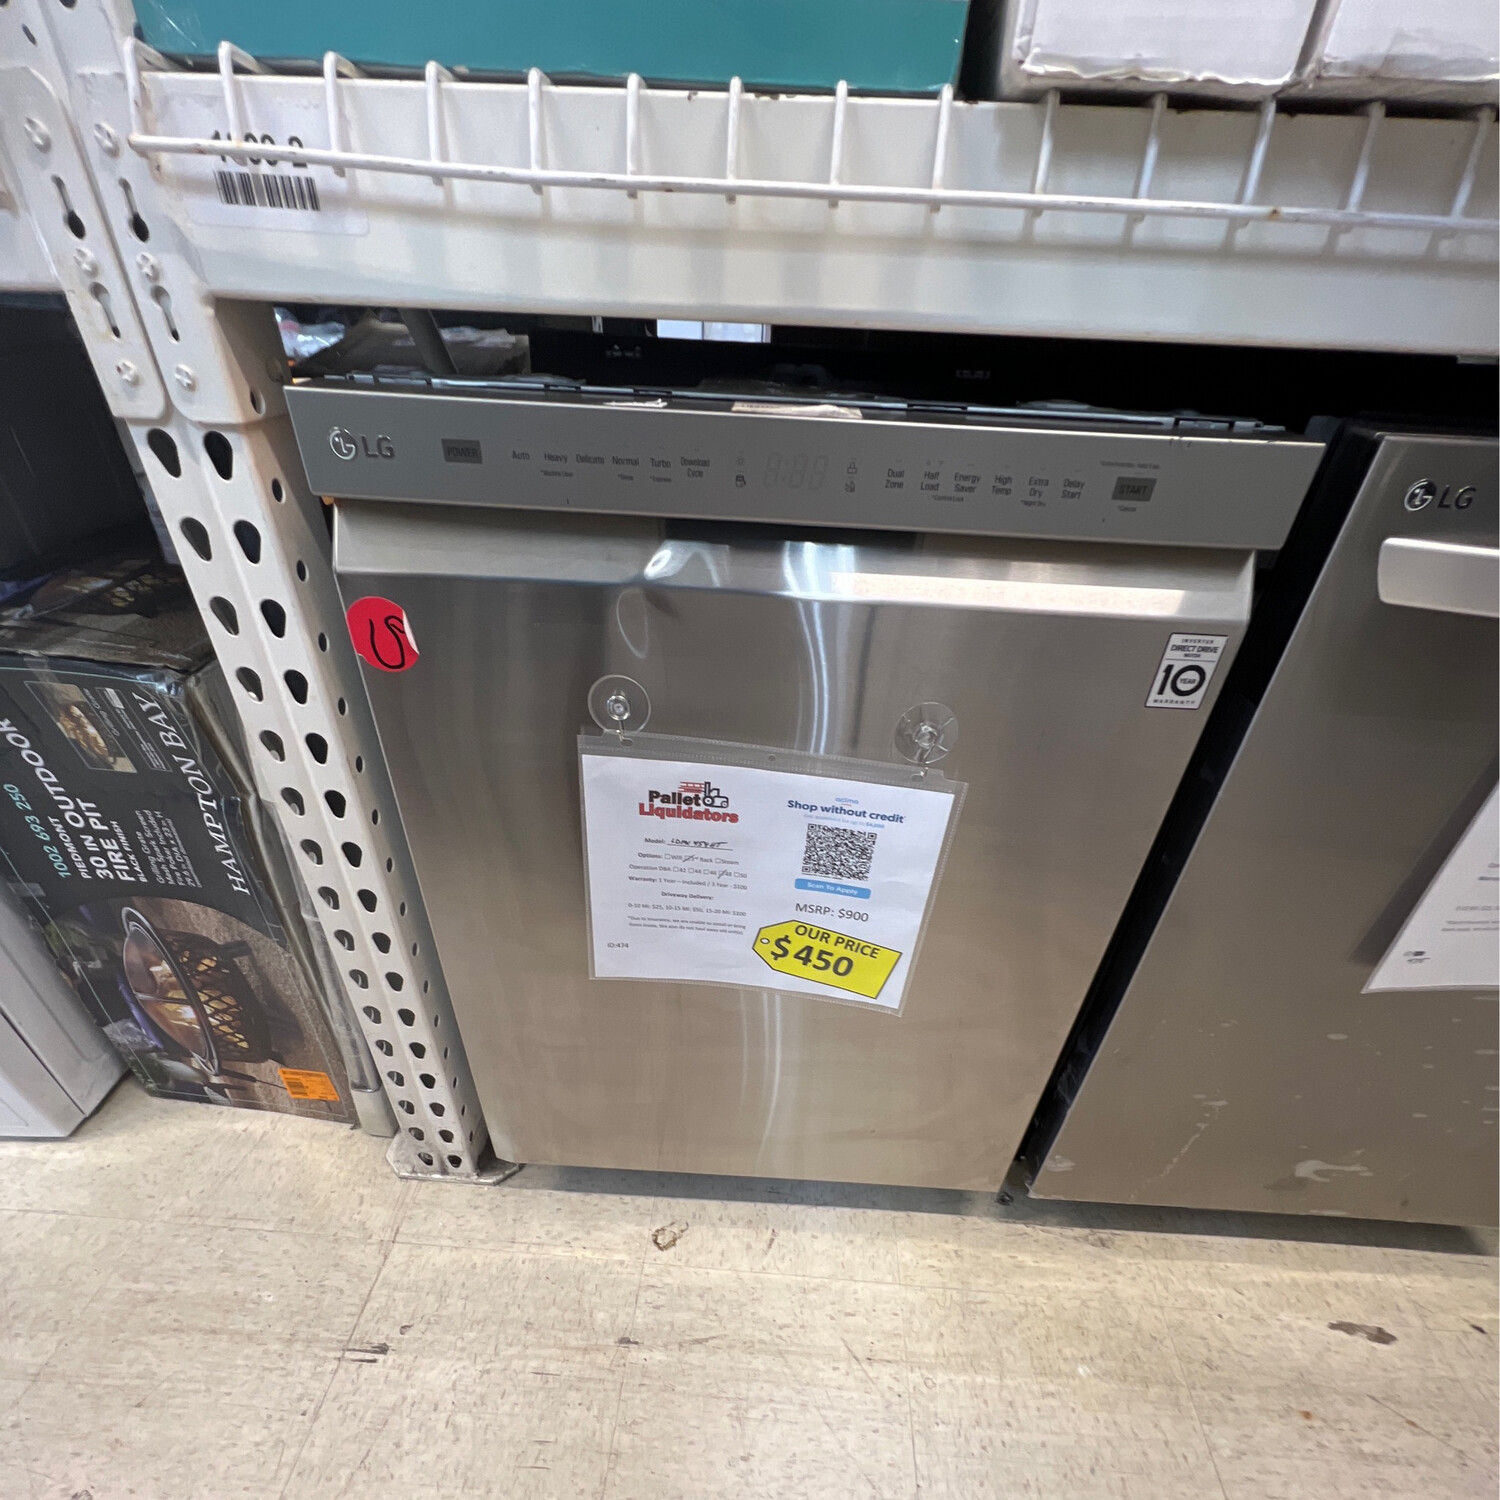 LG LDFN454HT Dishwasher